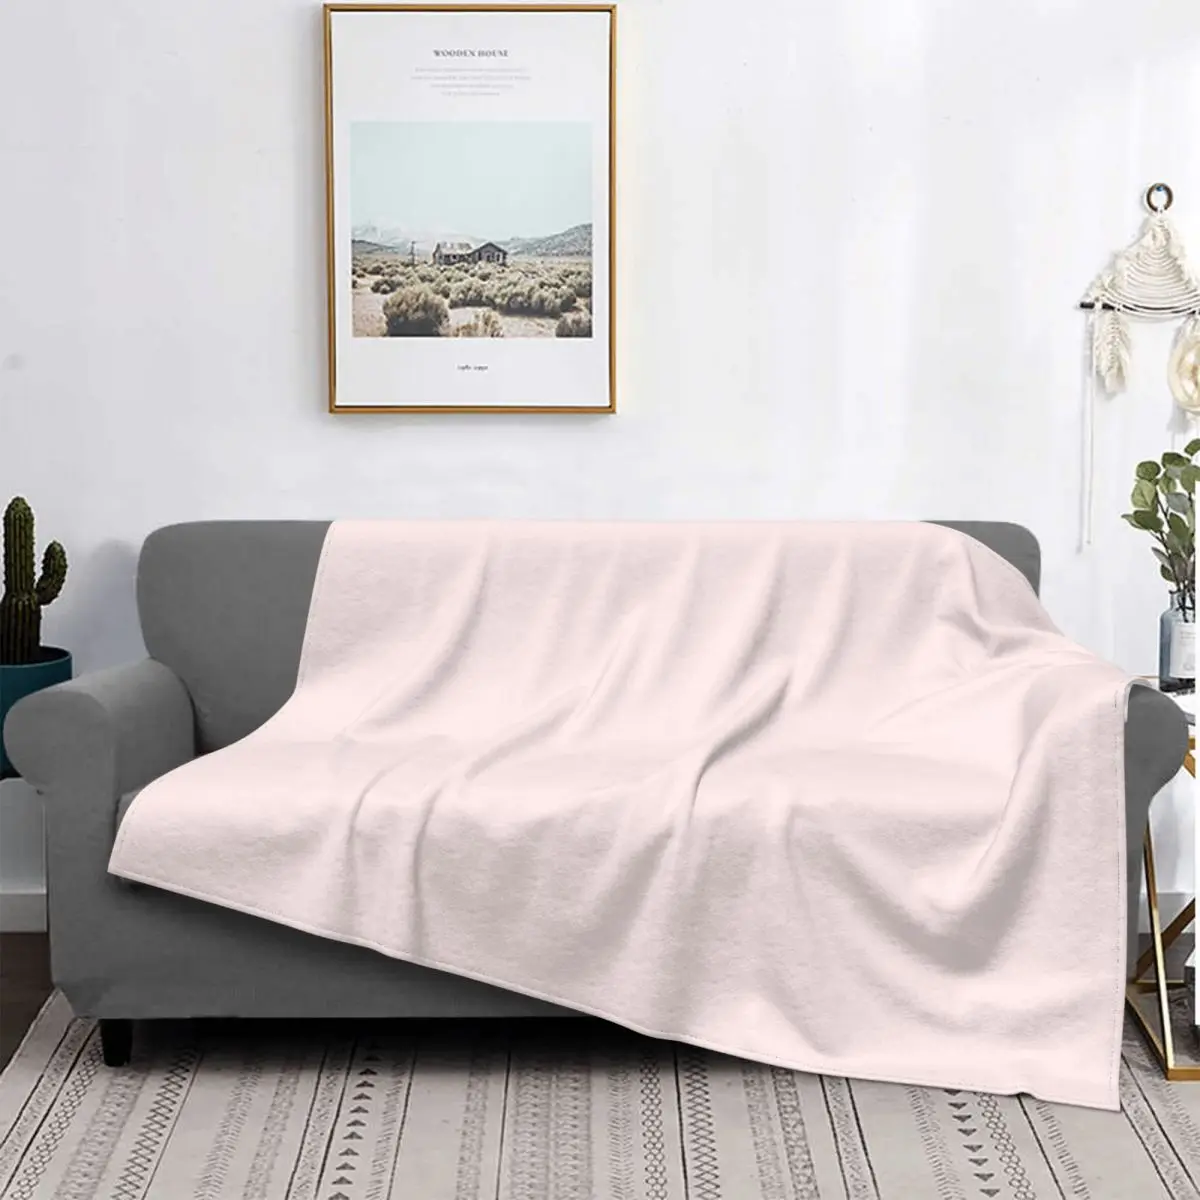 

Пастельное розовое одеяло, покрывало для кровати, плед, пляжный чехол, кавайное одеяло, покрывала для кровати